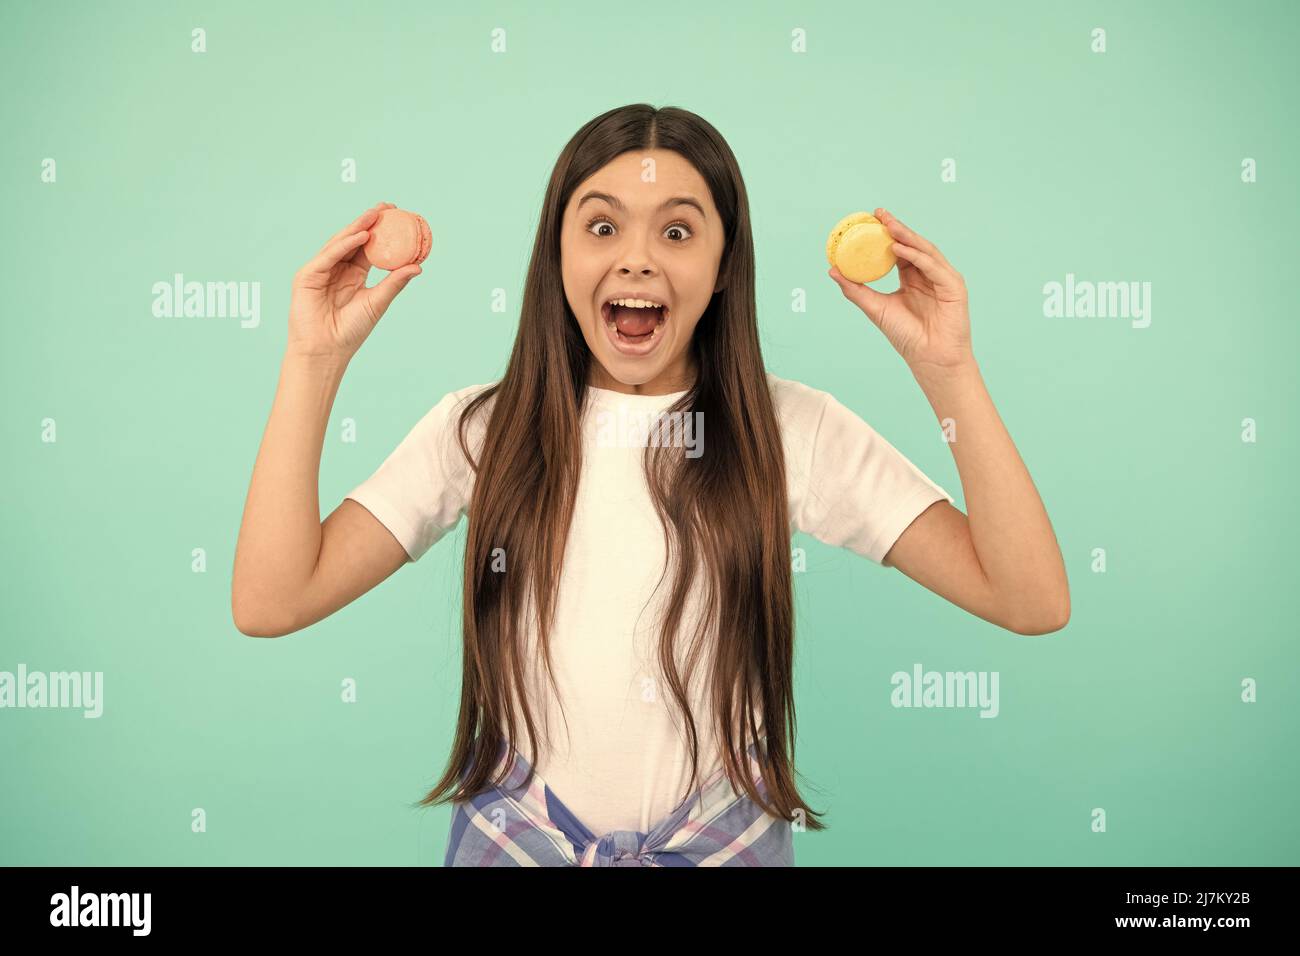 amazed teen girl hold french macaron or macaroon cookies, childhood Stock Photo